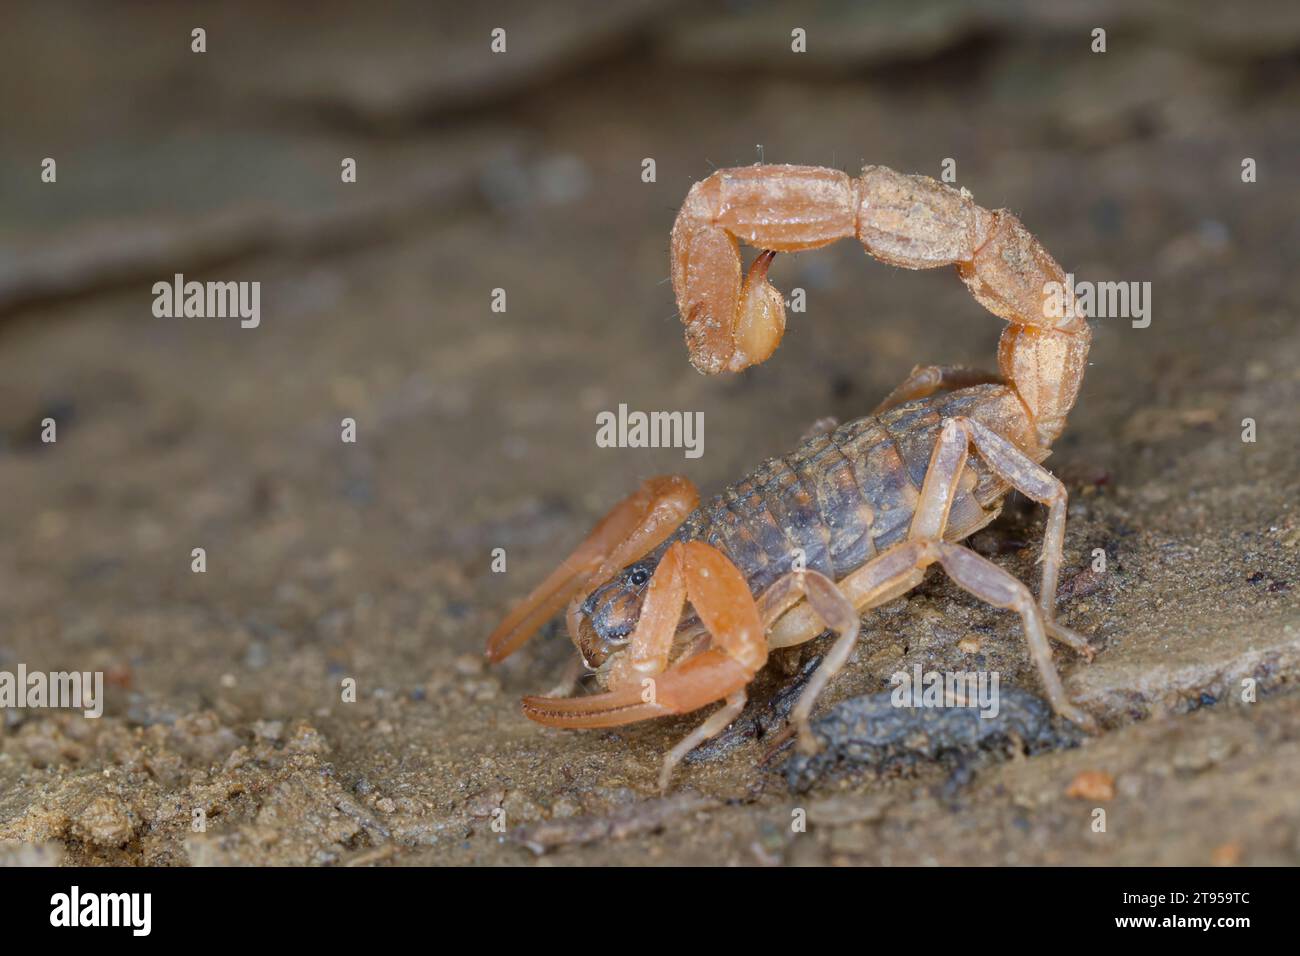 Scorpione a scacchi mediterraneo (Mesobuthus gibbosus), sul terreno, Croazia Foto Stock